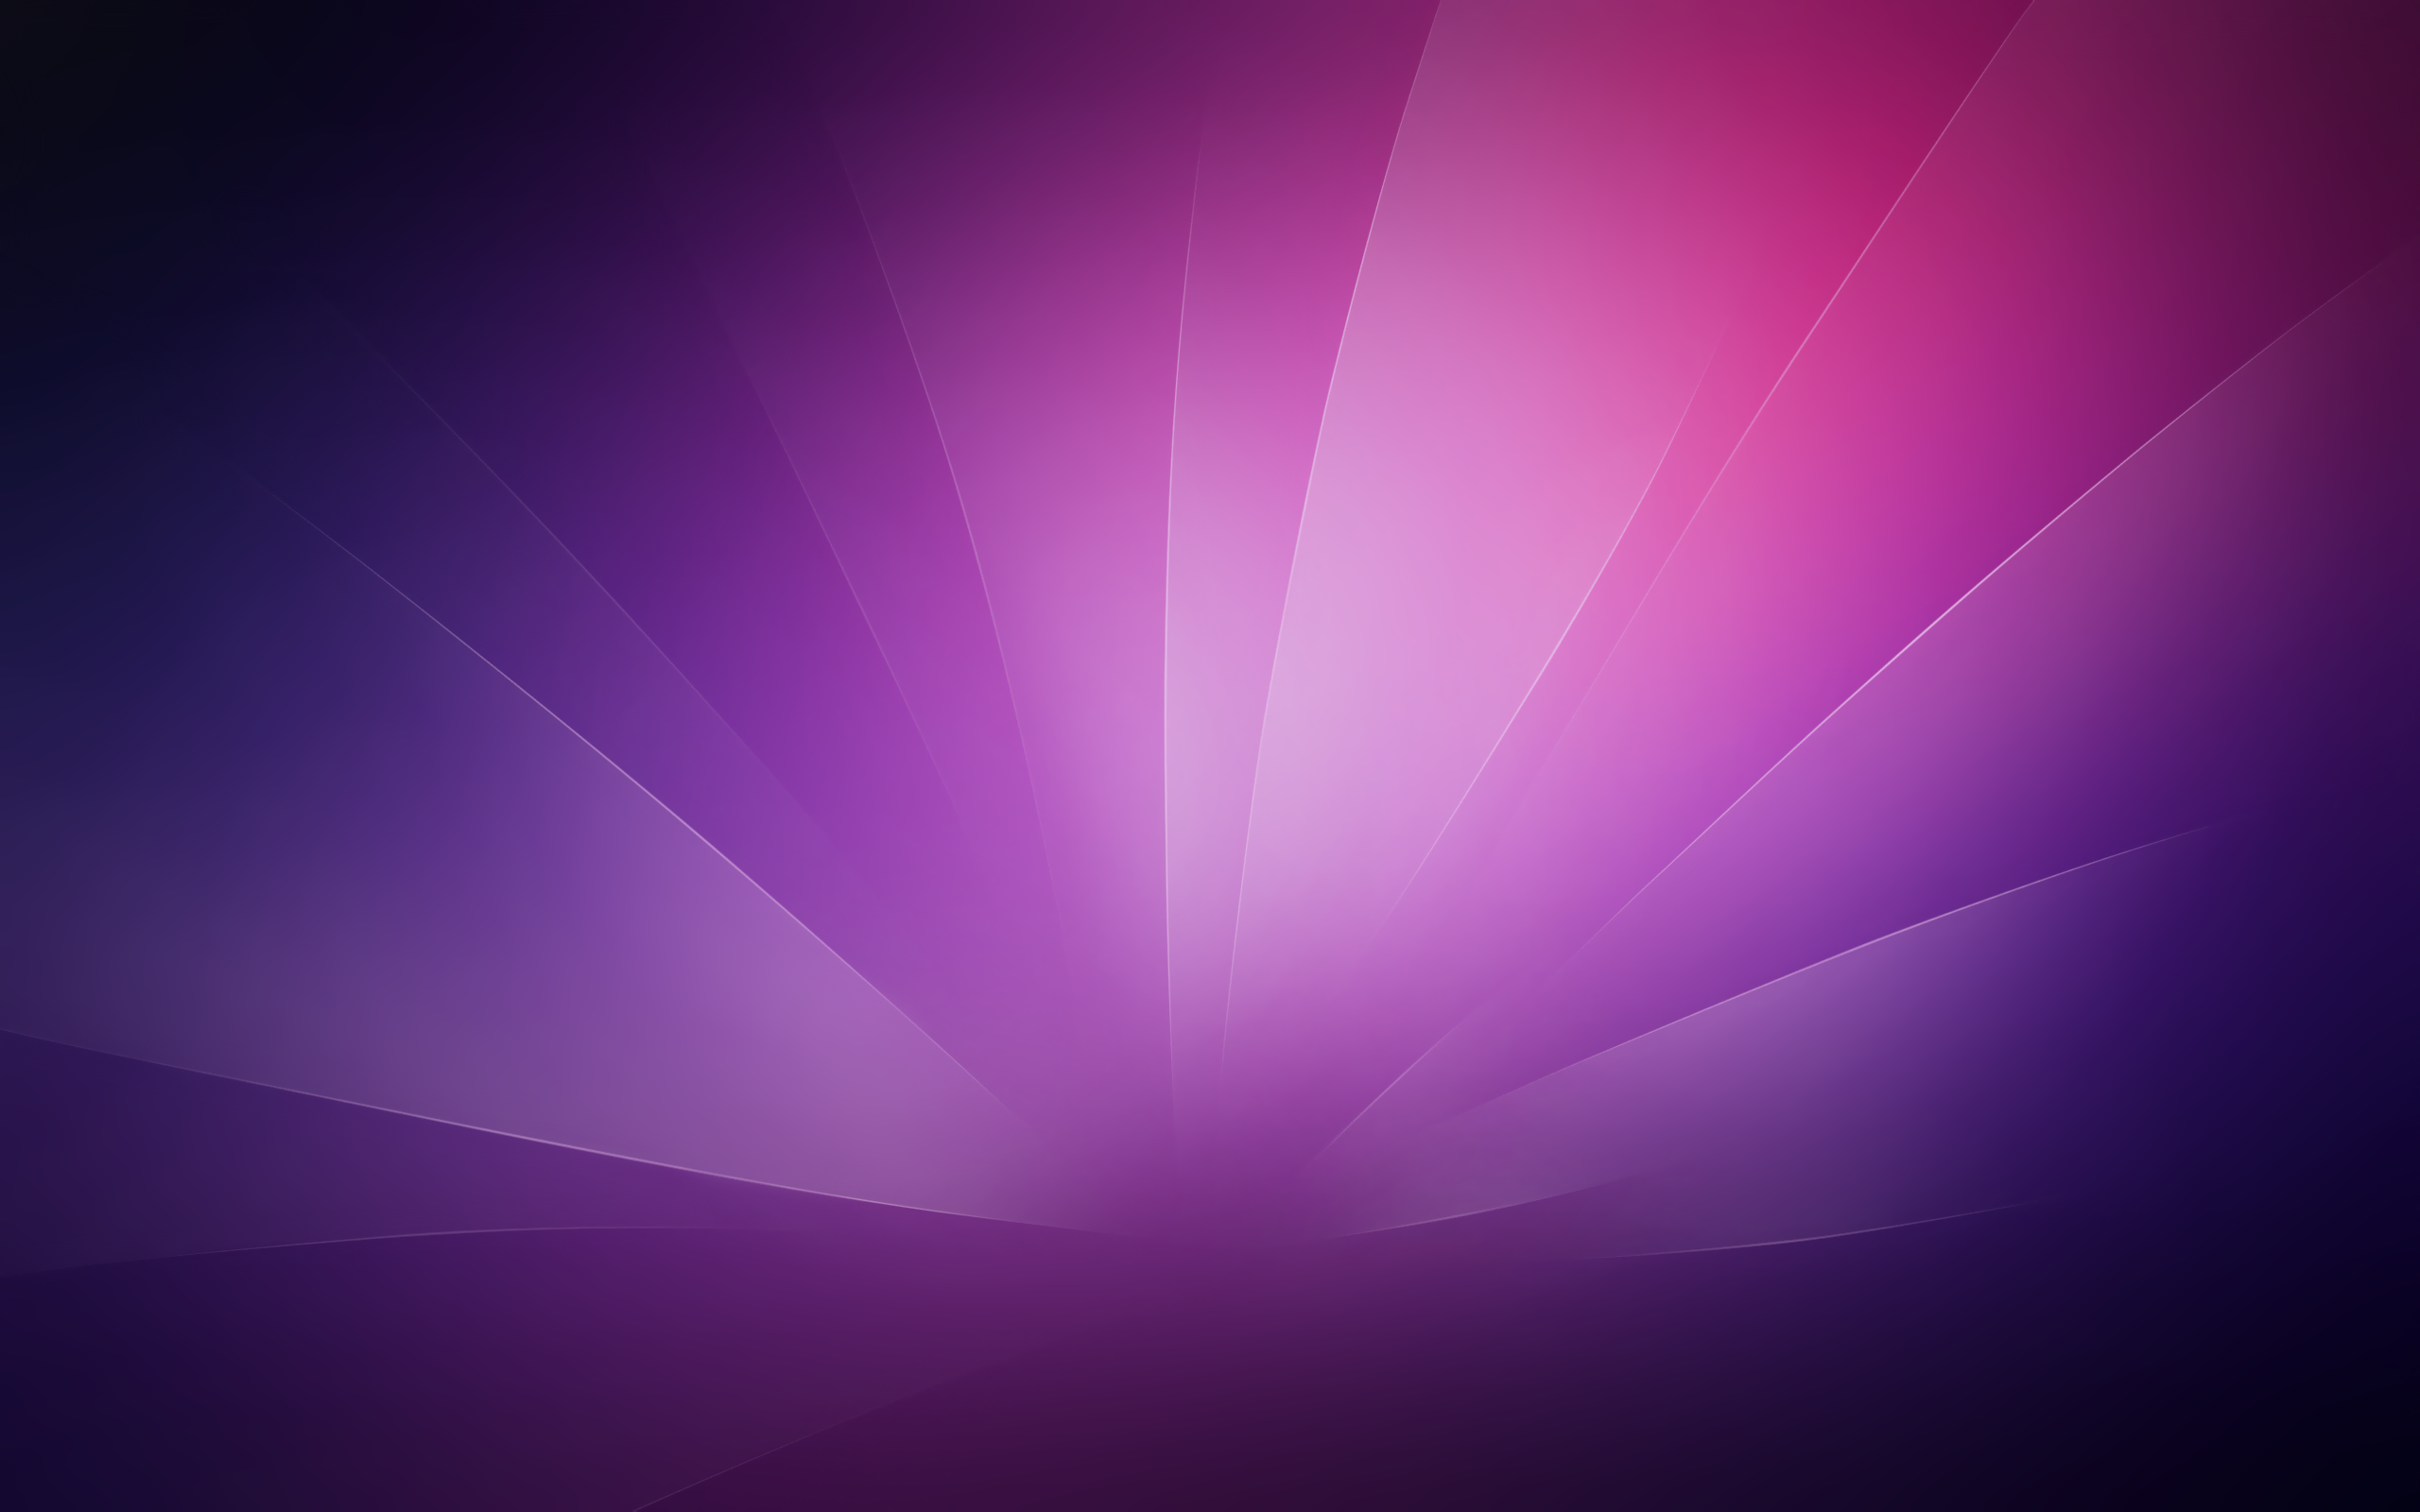 Hãy đến với WallpapersIn4knet và tải miễn phí Purple Abstract HD Wallpapers. Bạn sẽ được trải nghiệm khung cảnh tím tươi sáng, một không gian đầy màu sắc và thú vị. Với tia chớp len lỏi giữa các cánh hoa, nền tím trở nên sống động và hấp dẫn hơn bao giờ hết.